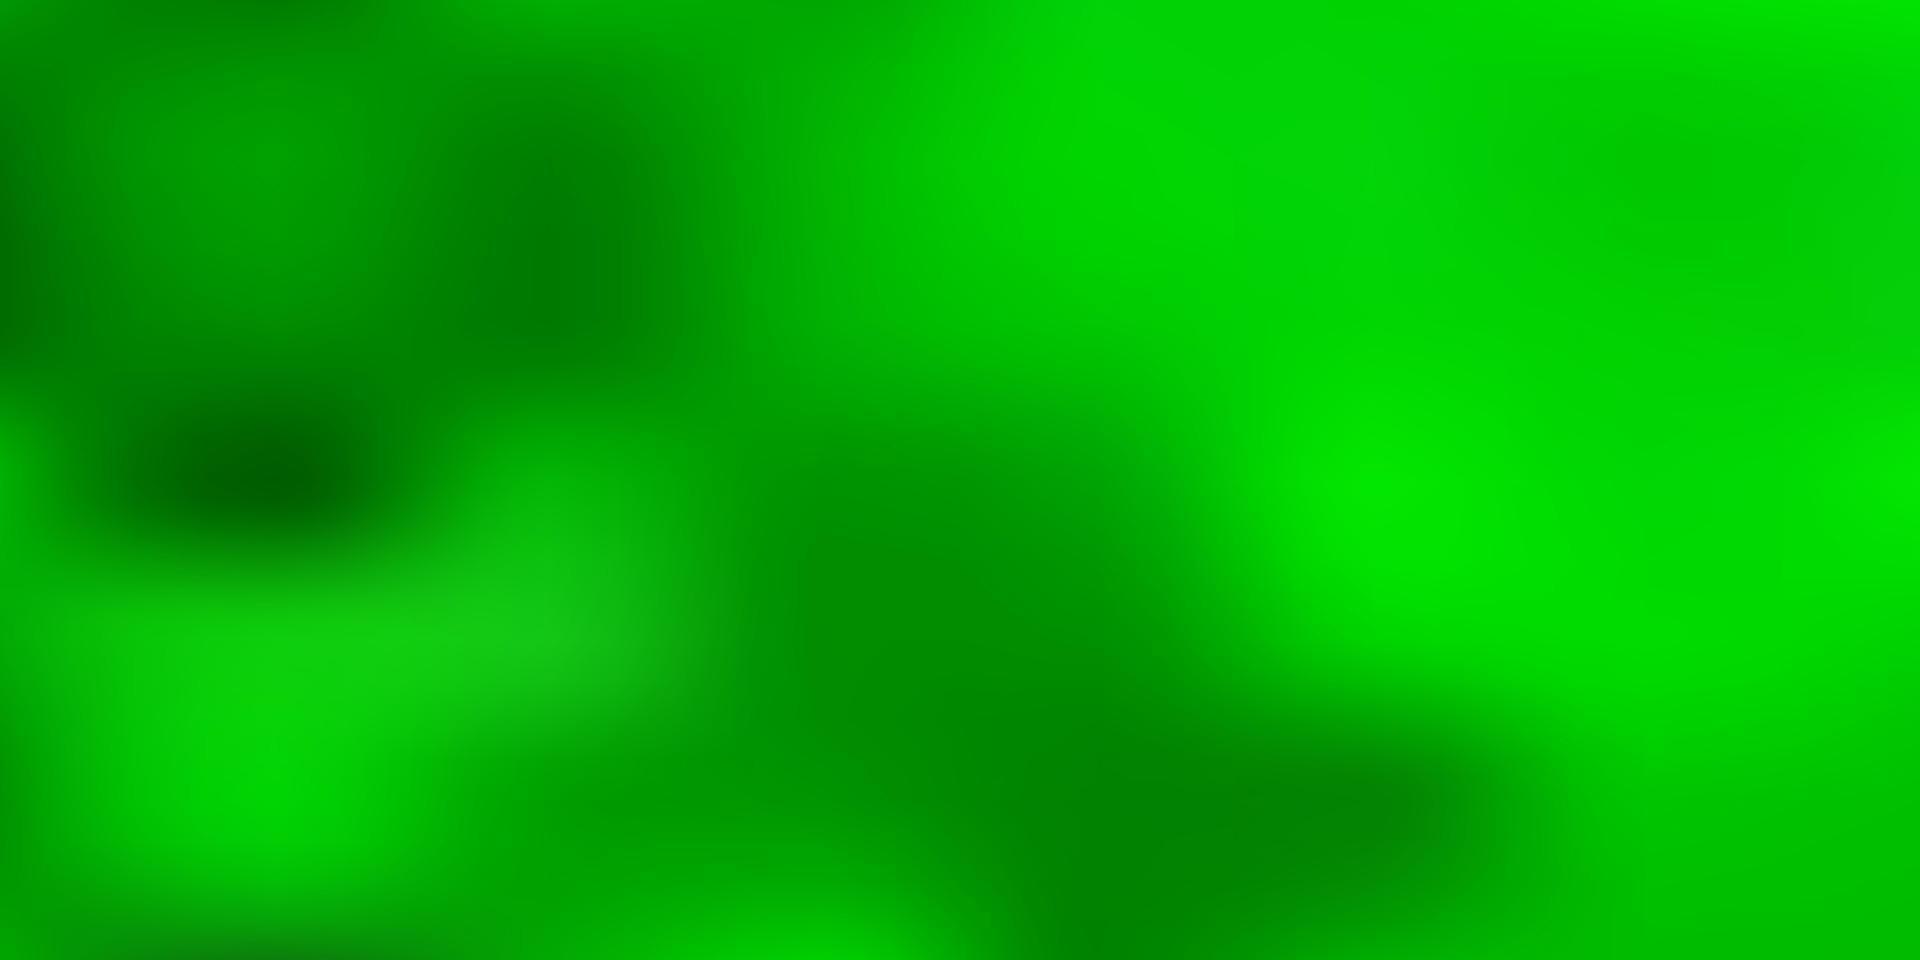 Light green vector blur texture.